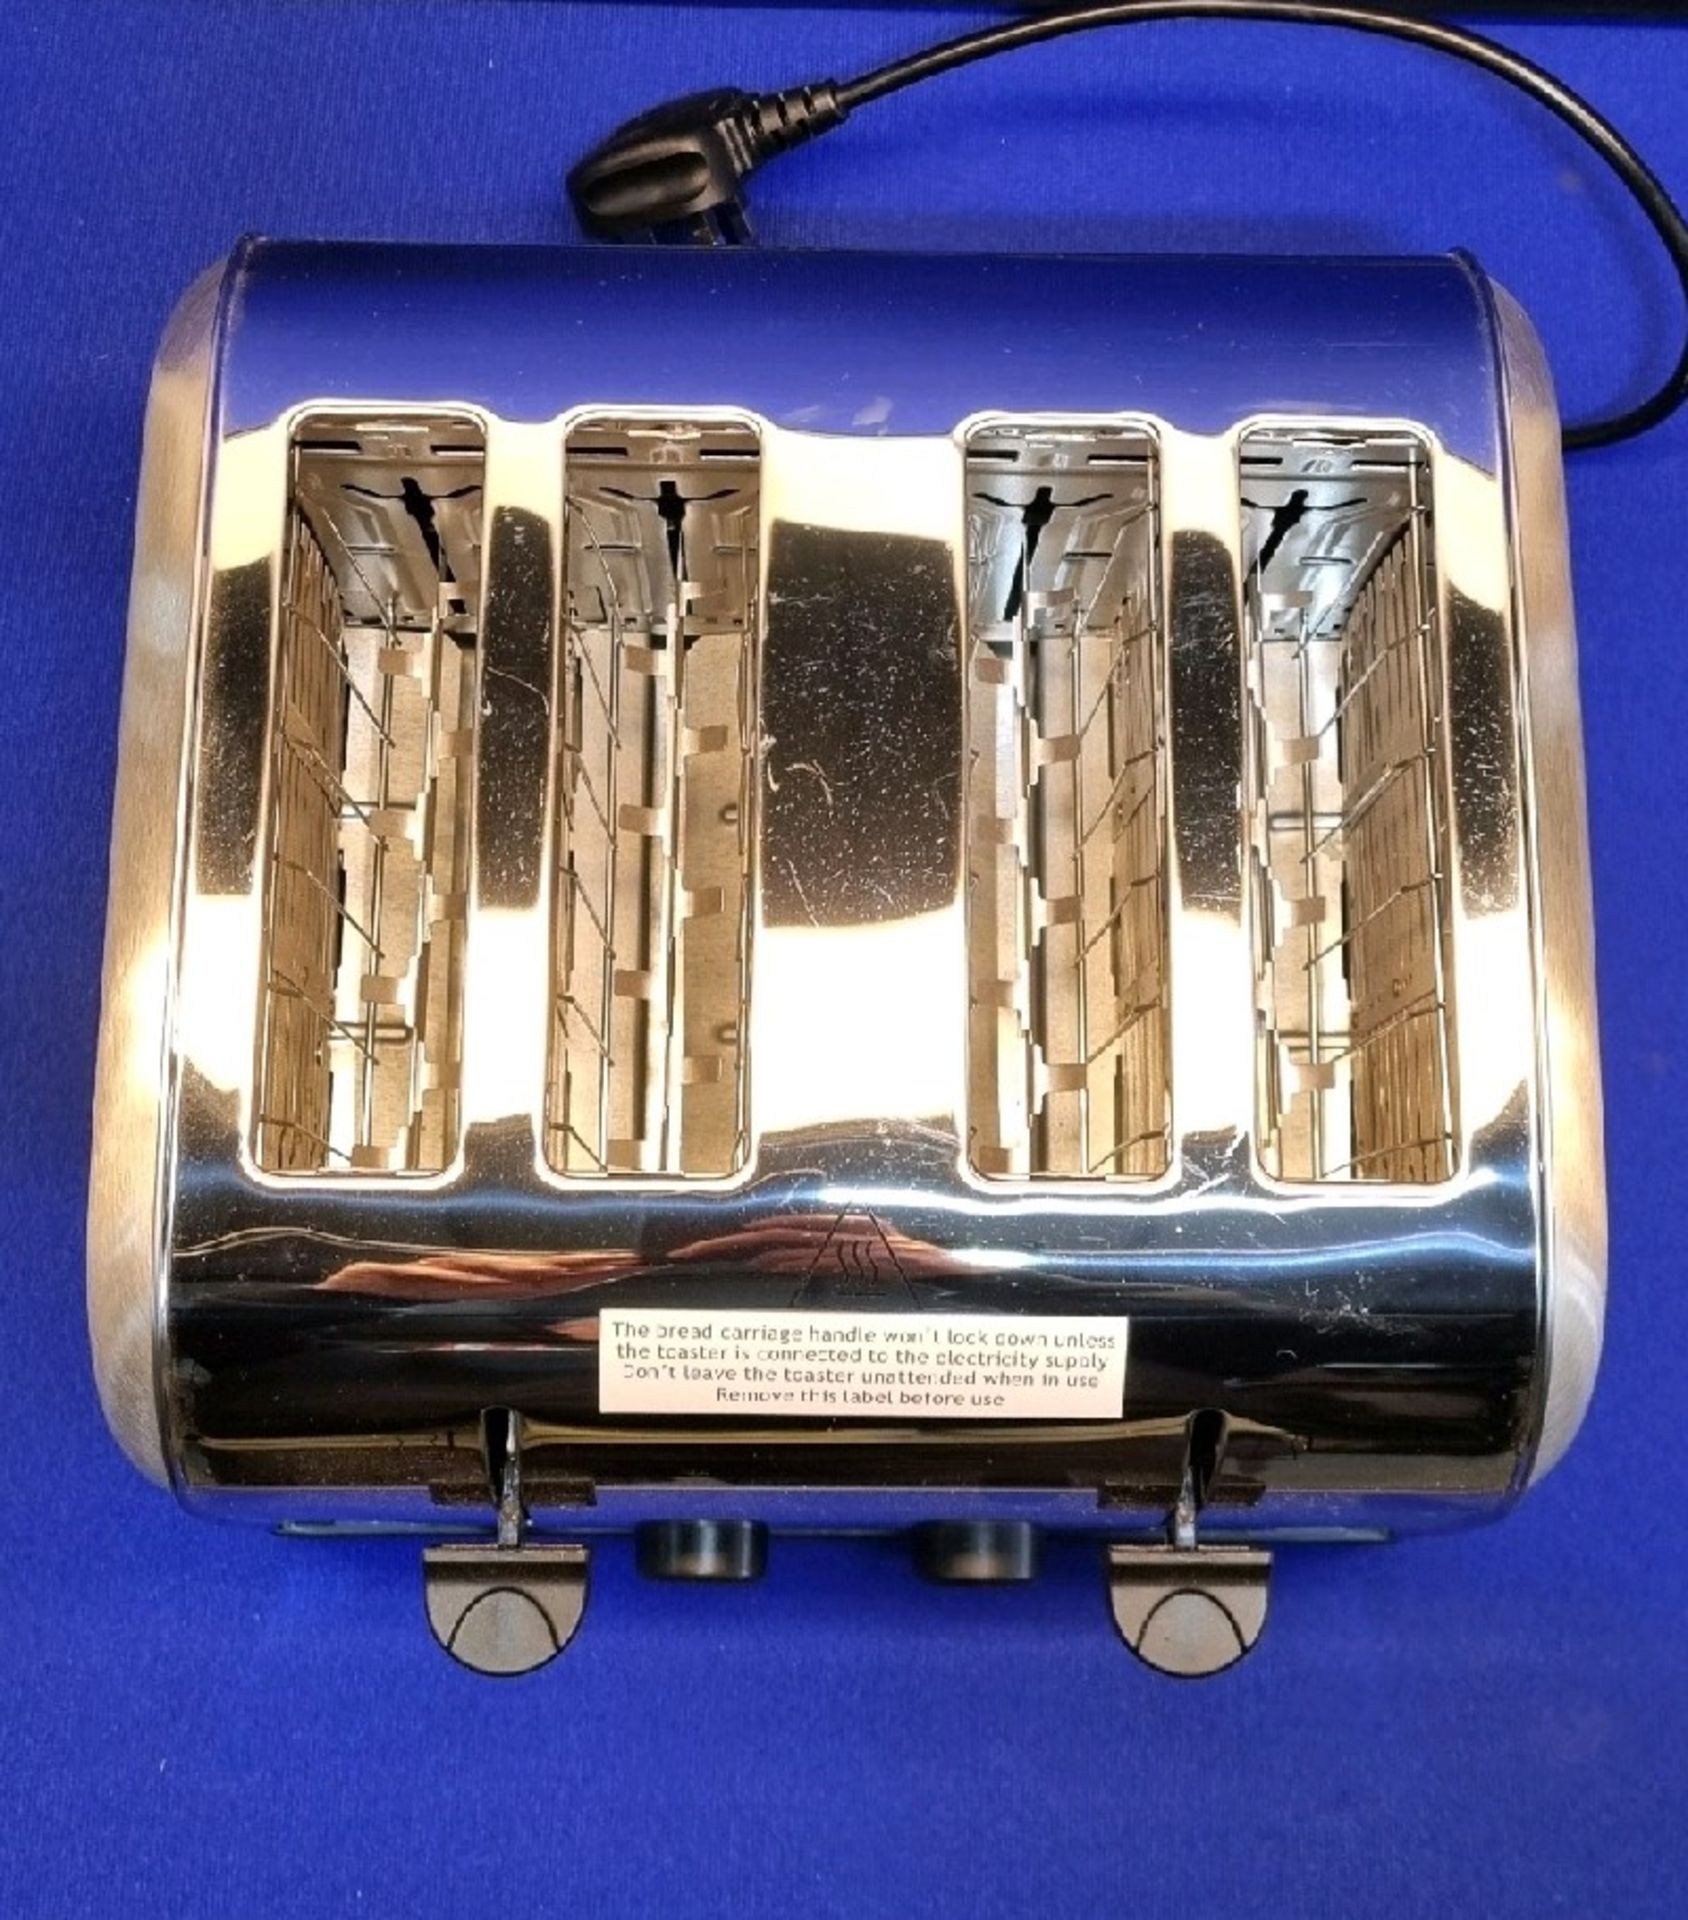 Russell Hobbs Chrome 18790 4 Slice Toaster (Some Slight Marks) - Image 3 of 4